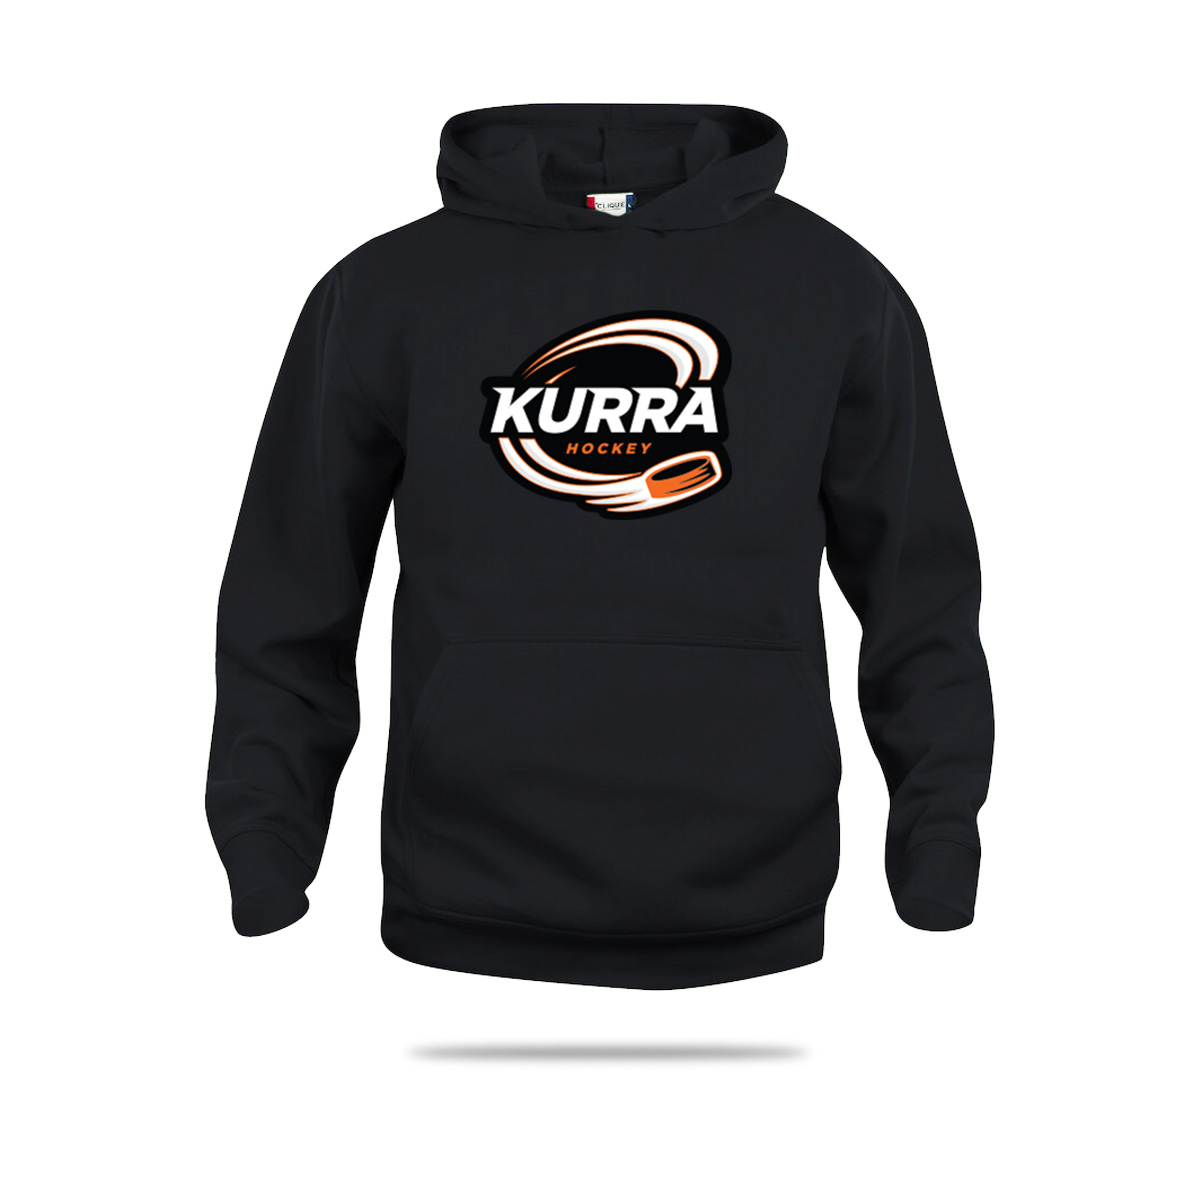 Kurra-fani-3022-musta-original